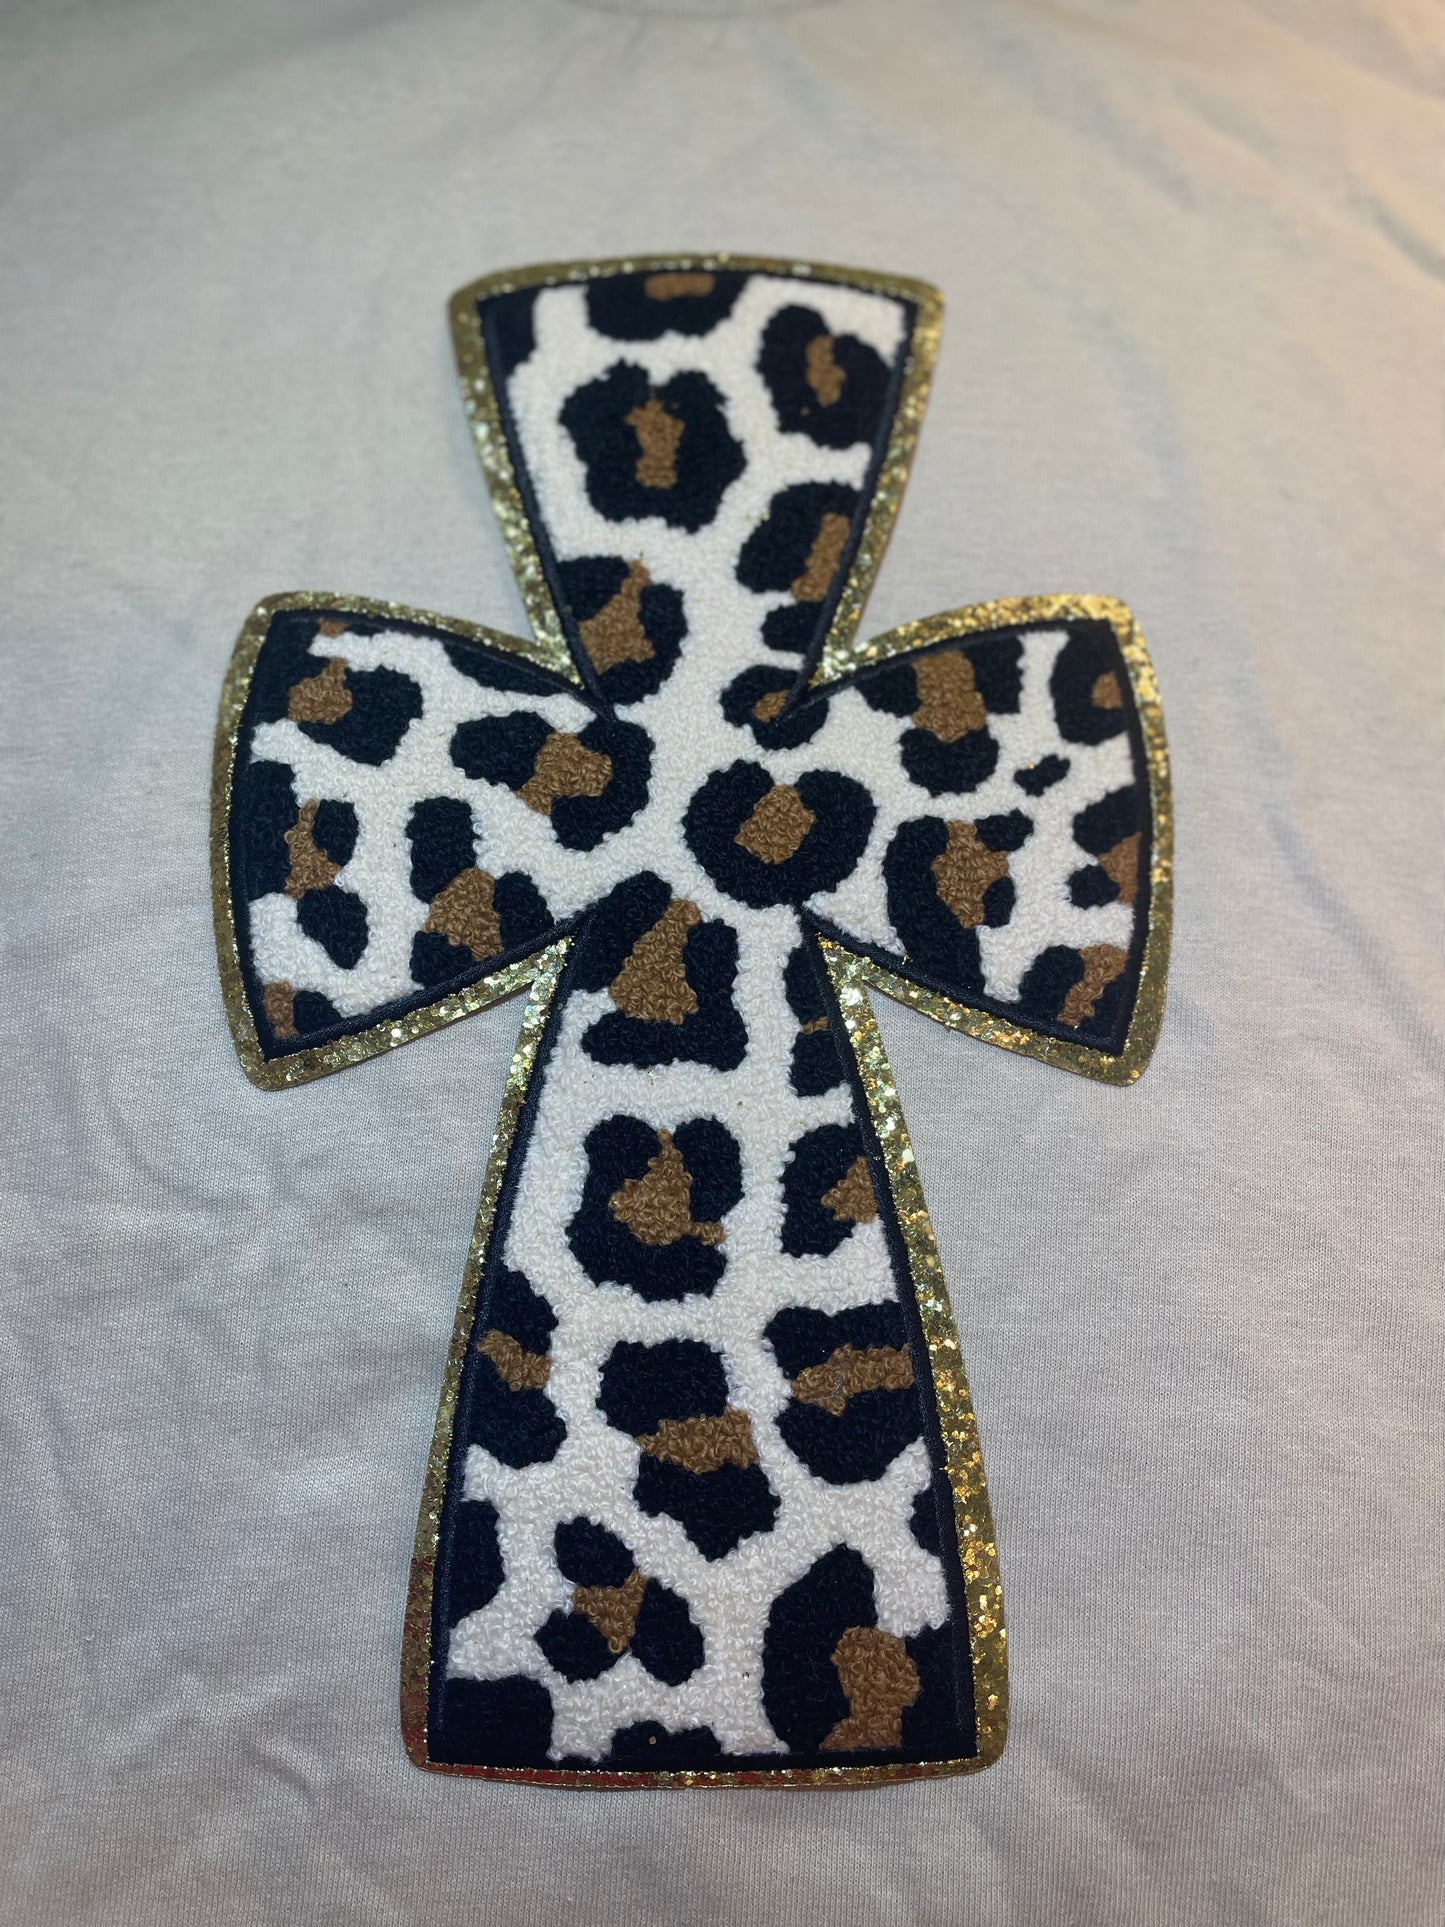 Leopard Chenille and Glitter Cross , Easter Cross, Gift for Easter